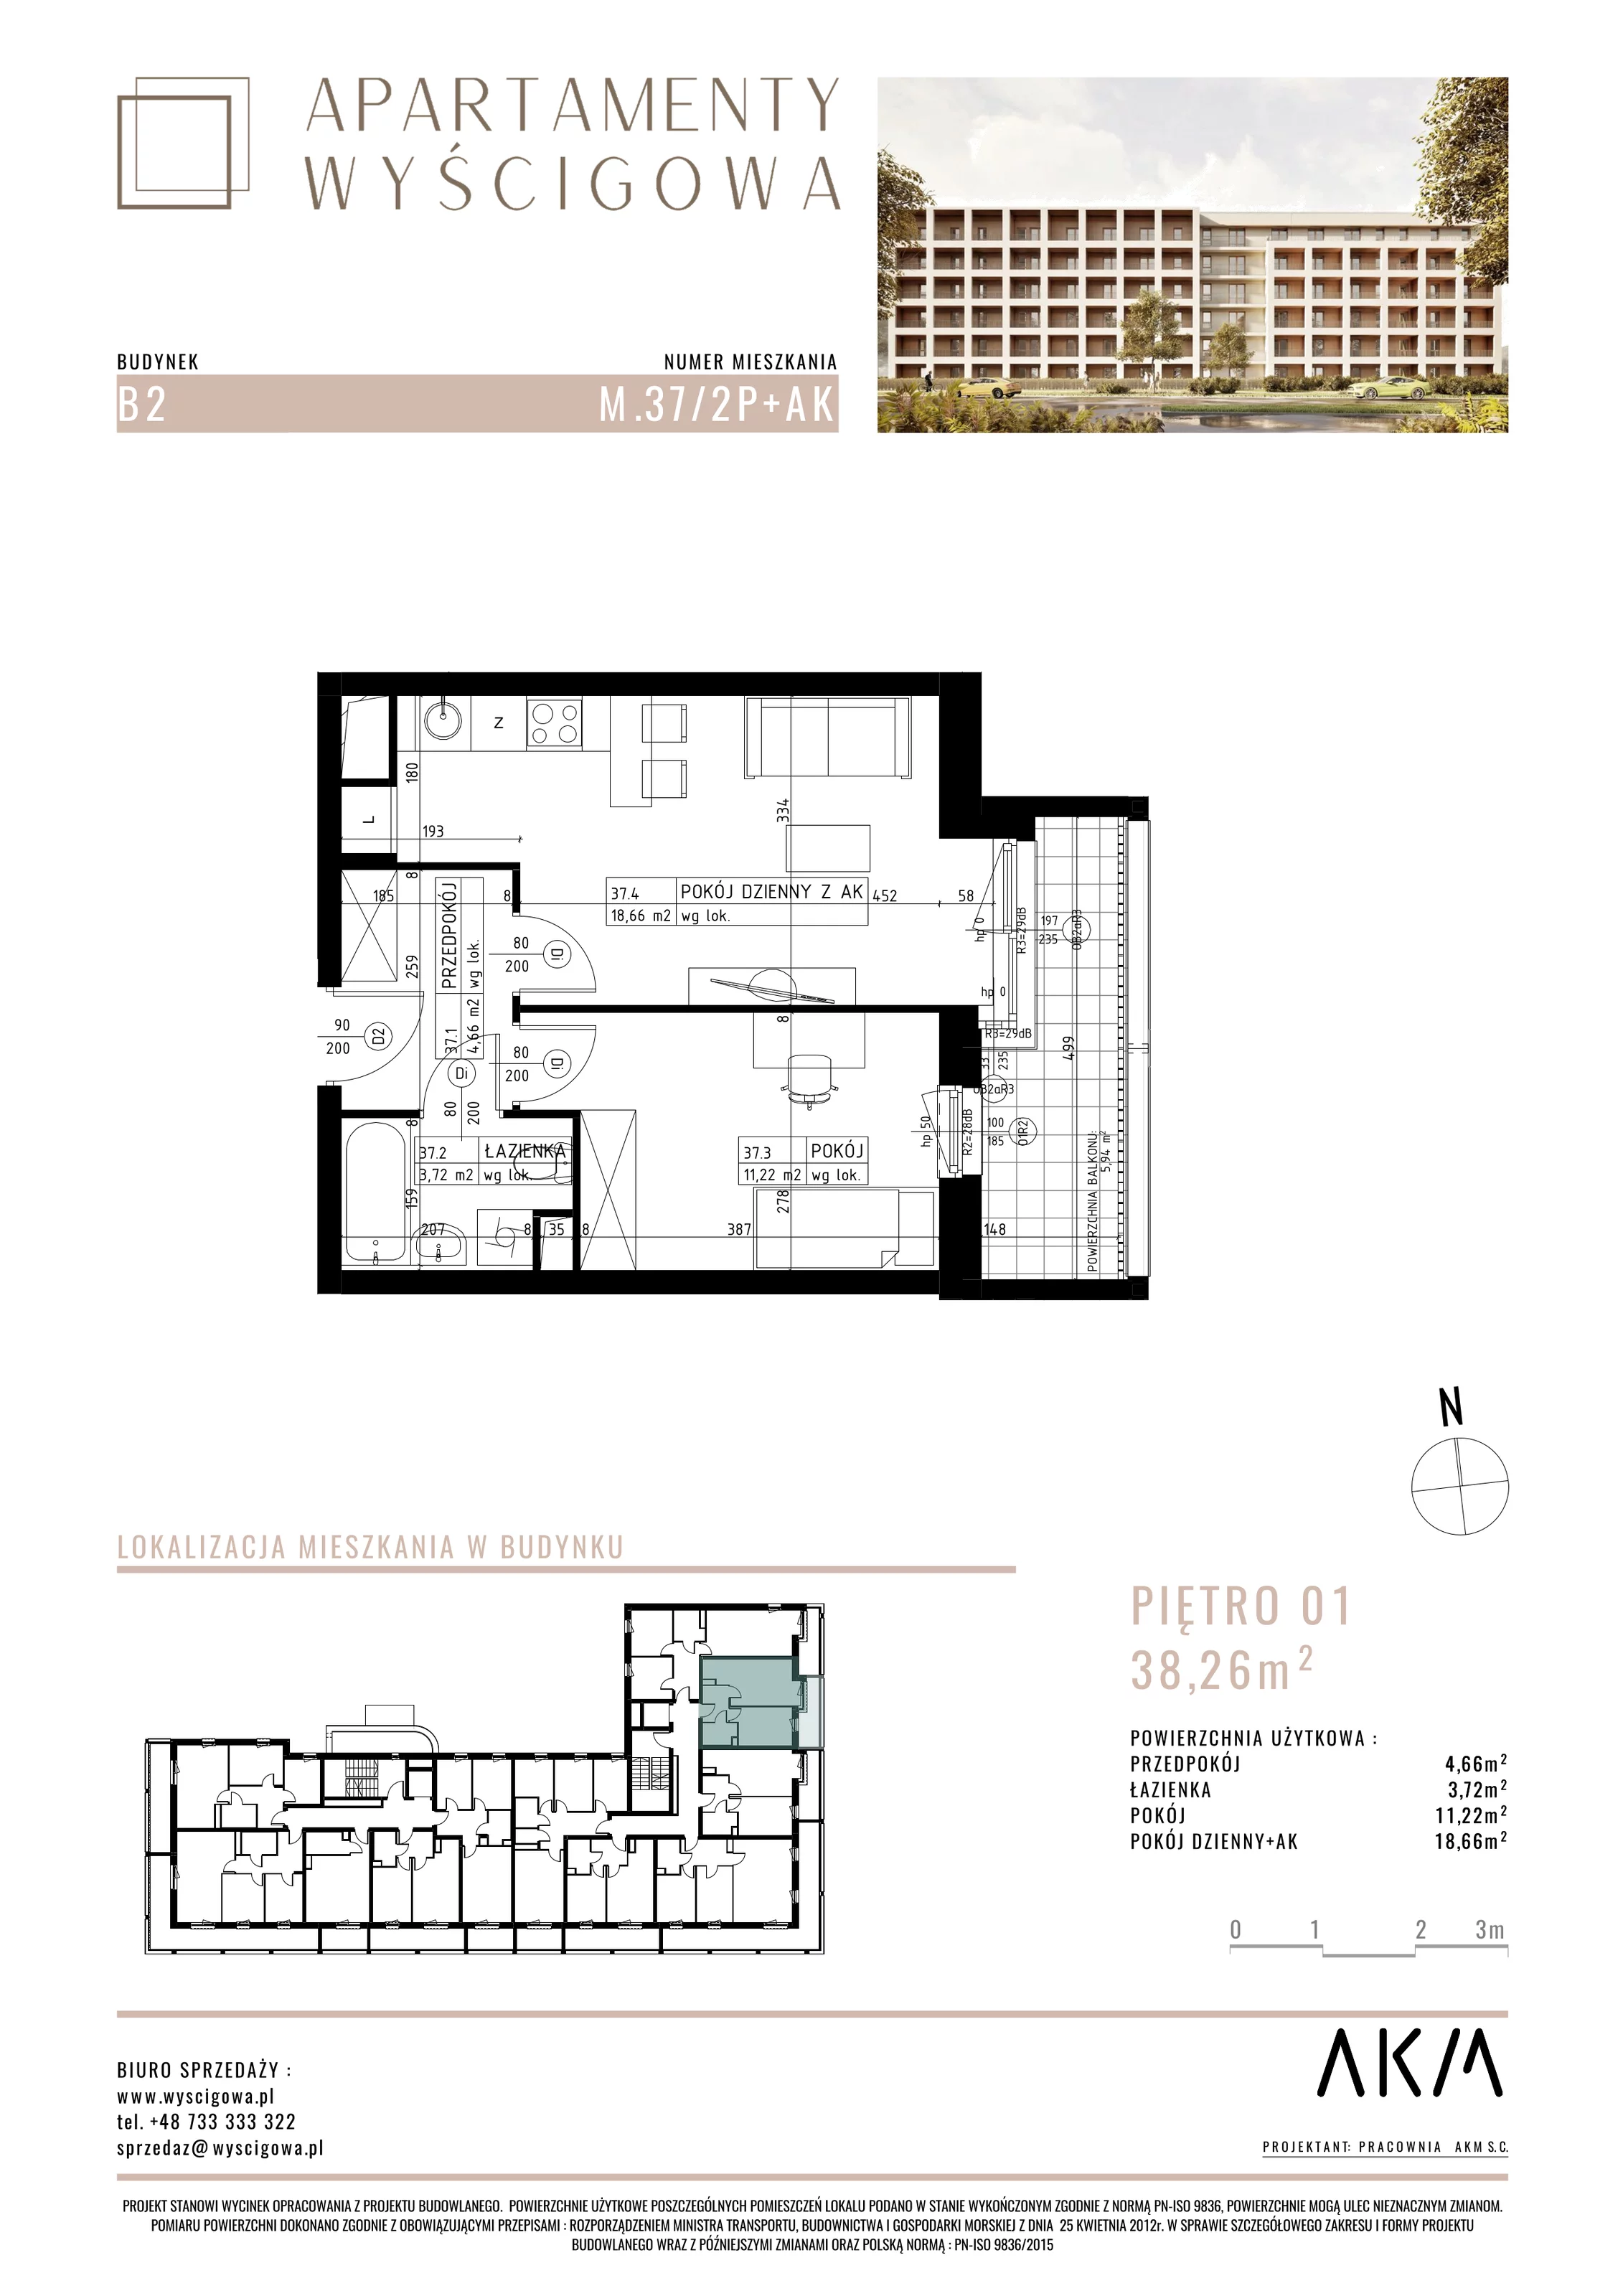 Mieszkanie 38,26 m², piętro 1, oferta nr B2.M37, Apartamenty Wyścigowa, Lublin, Dziesiąta, Dziesiąta, ul. Wyścigowa